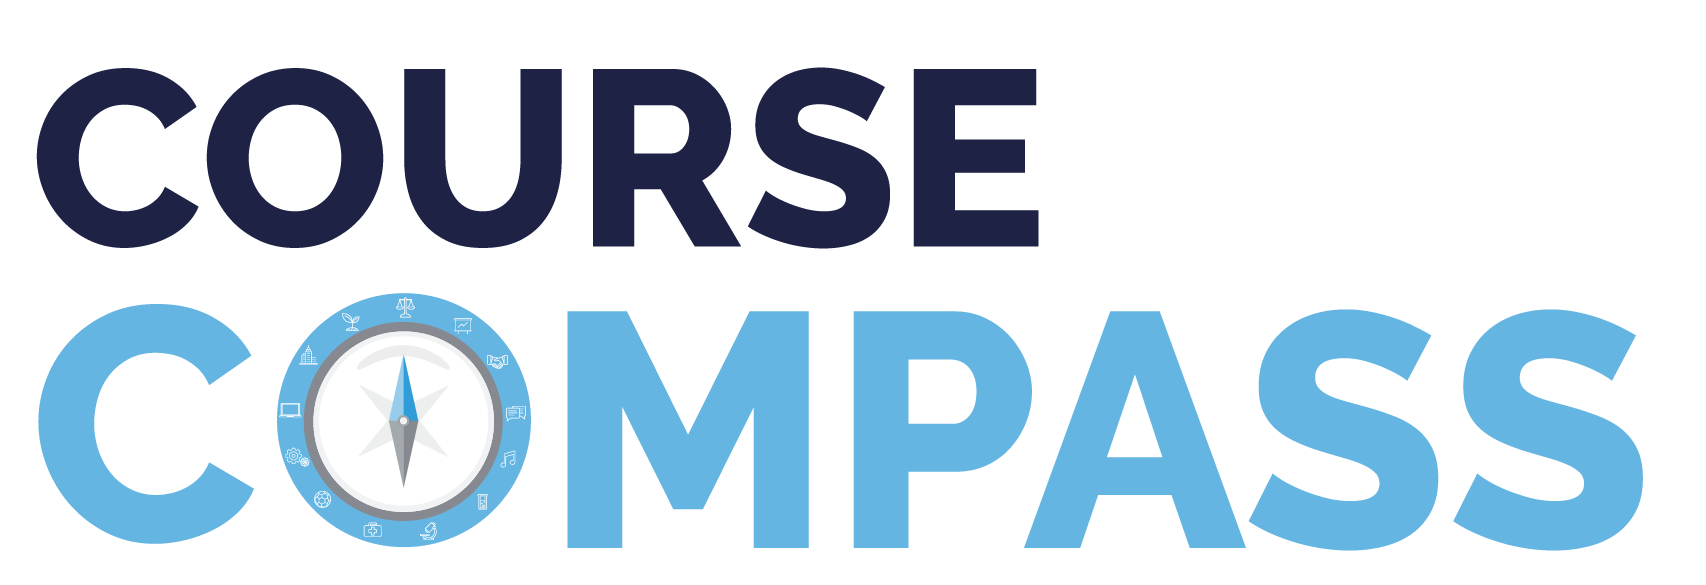 Course Compass logo